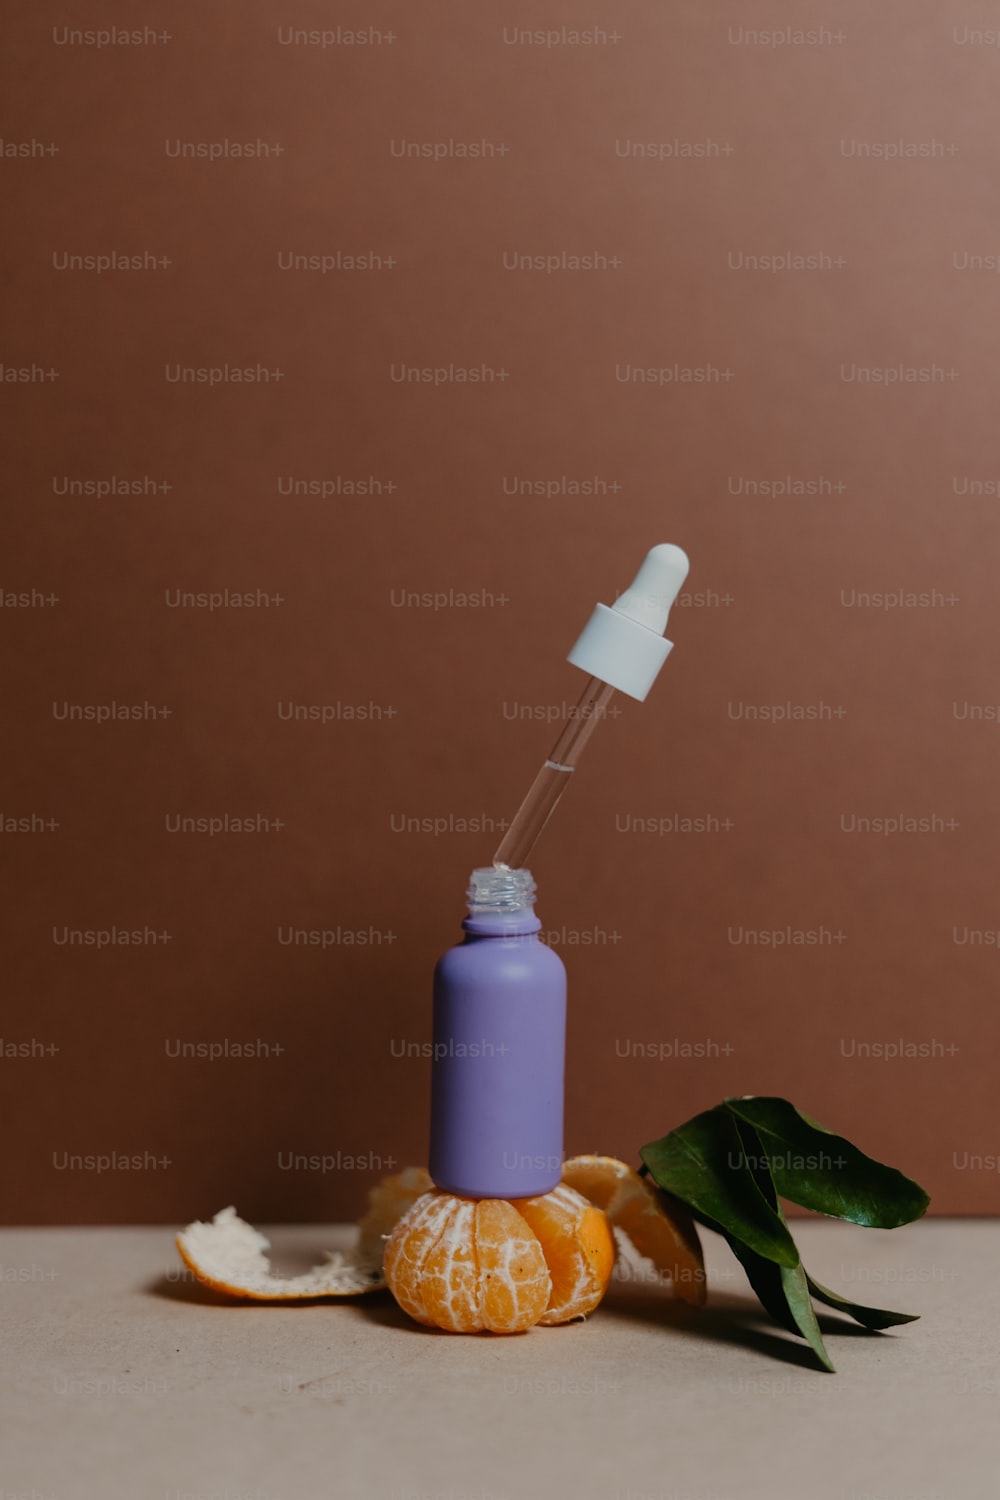 une peau d’orange et une bouteille de rince-bouche posée sur une table